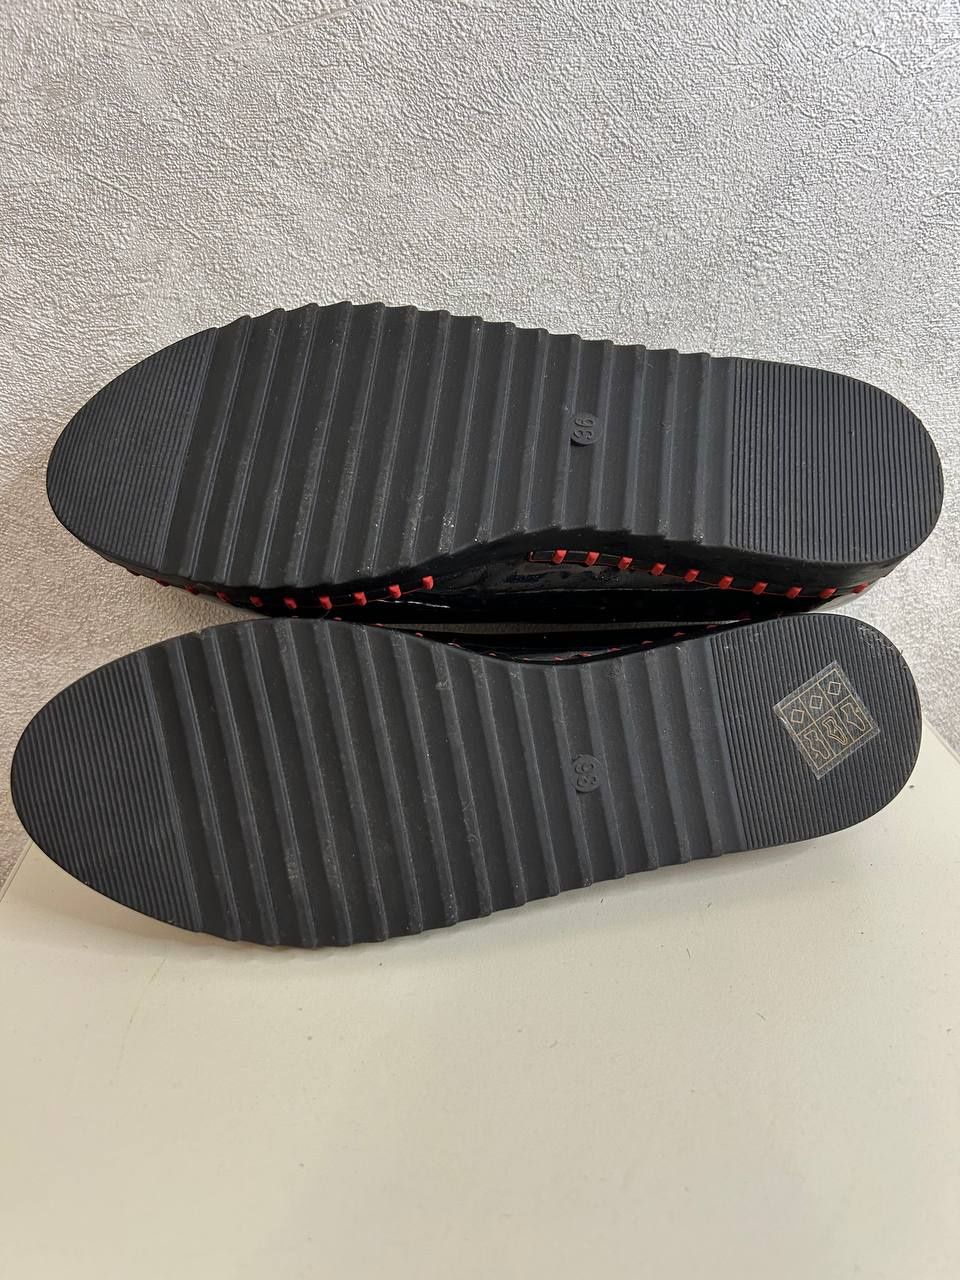 Новые туфли мокасины женские 36 38 39 размеры недорого